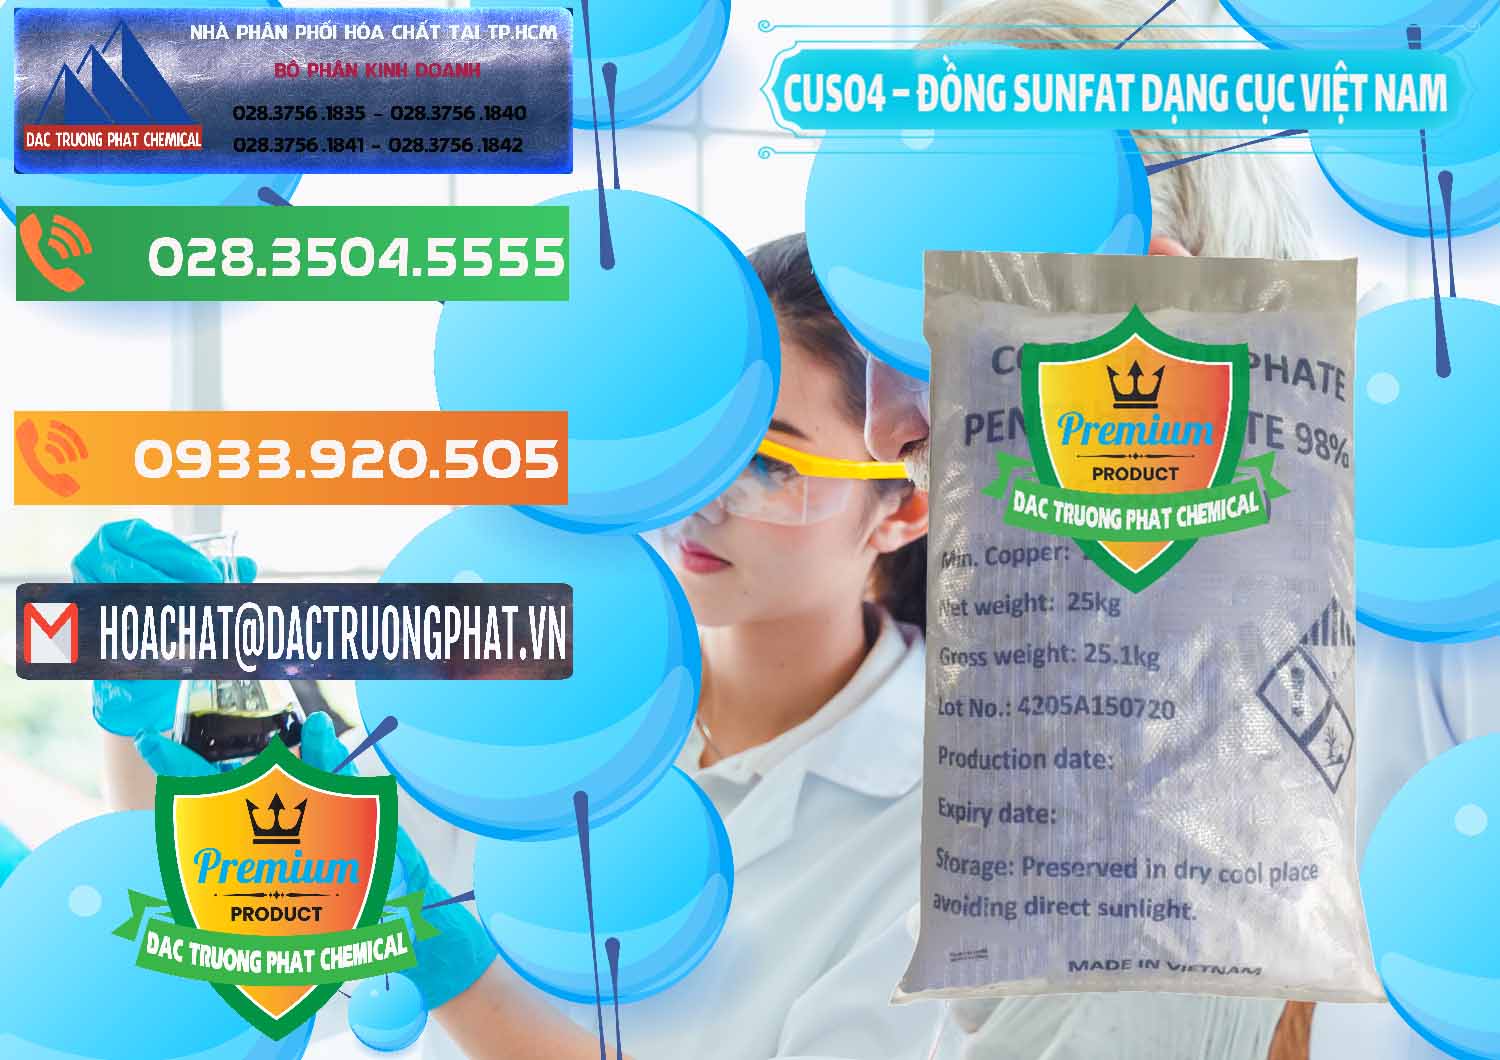 Chuyên kinh doanh _ phân phối CUSO4 – Đồng Sunfat Dạng Cục Việt Nam - 0303 - Nơi chuyên phân phối & kinh doanh hóa chất tại TP.HCM - hoachatxulynuoc.com.vn